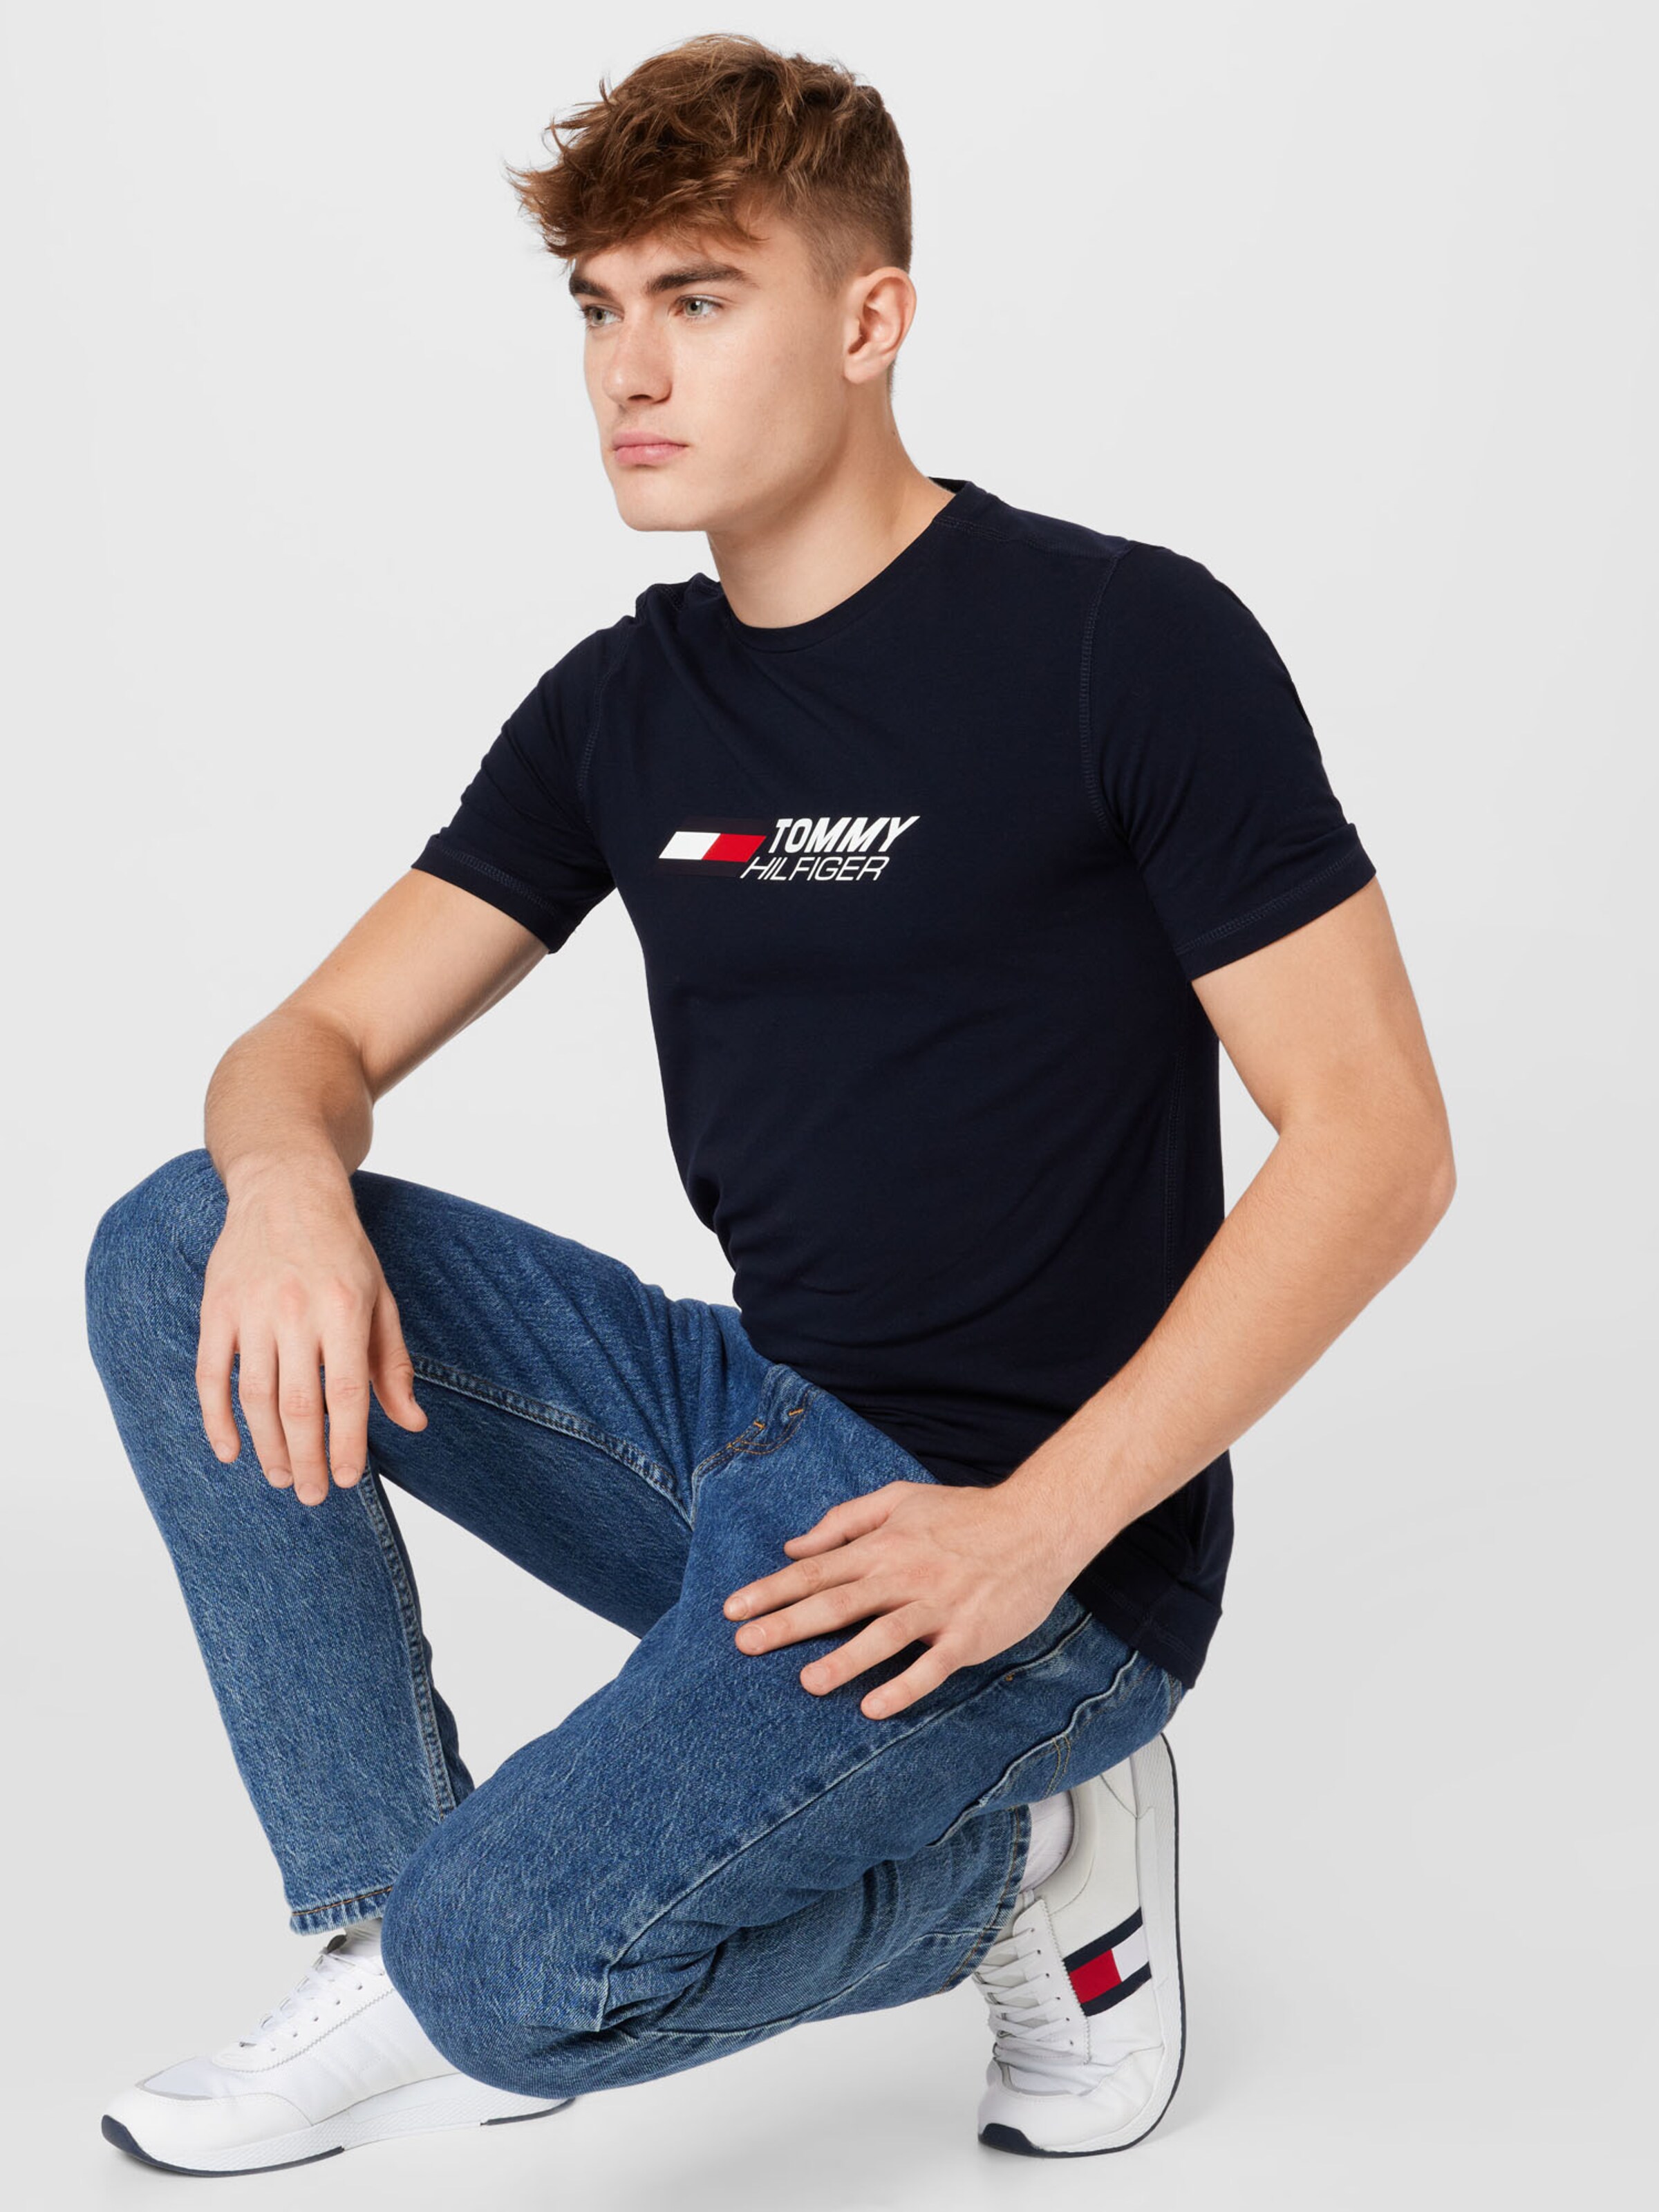 Männer Sportarten Tommy Sport T-Shirt in Navy - AY06518